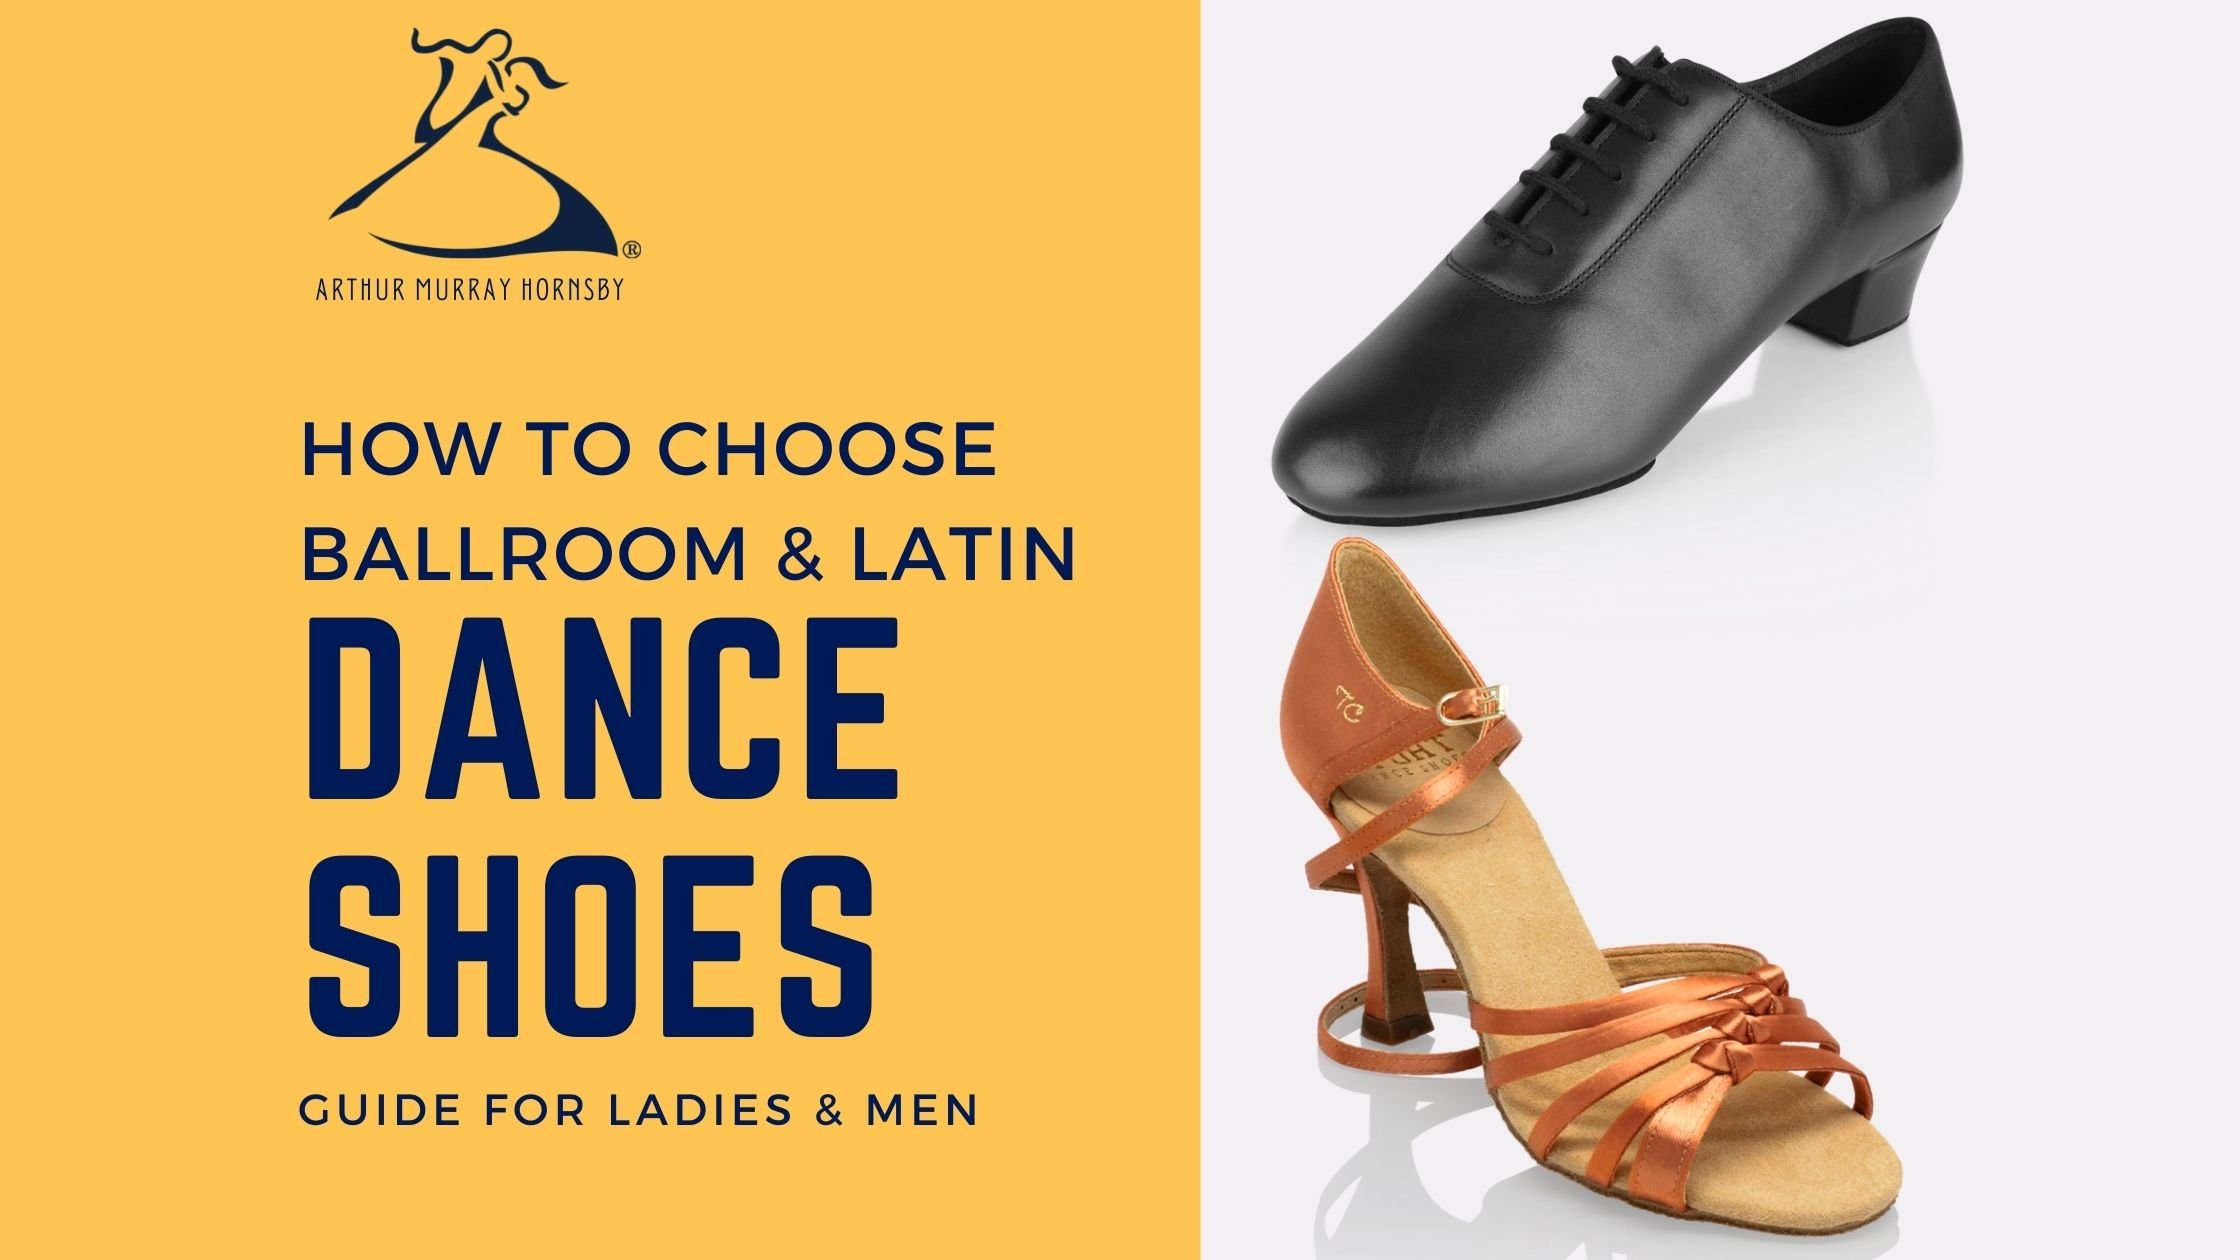 Veroveren krijgen overhemd How To Choose Ballroom & Latin Dance Shoes: Guide for Ladies & Men